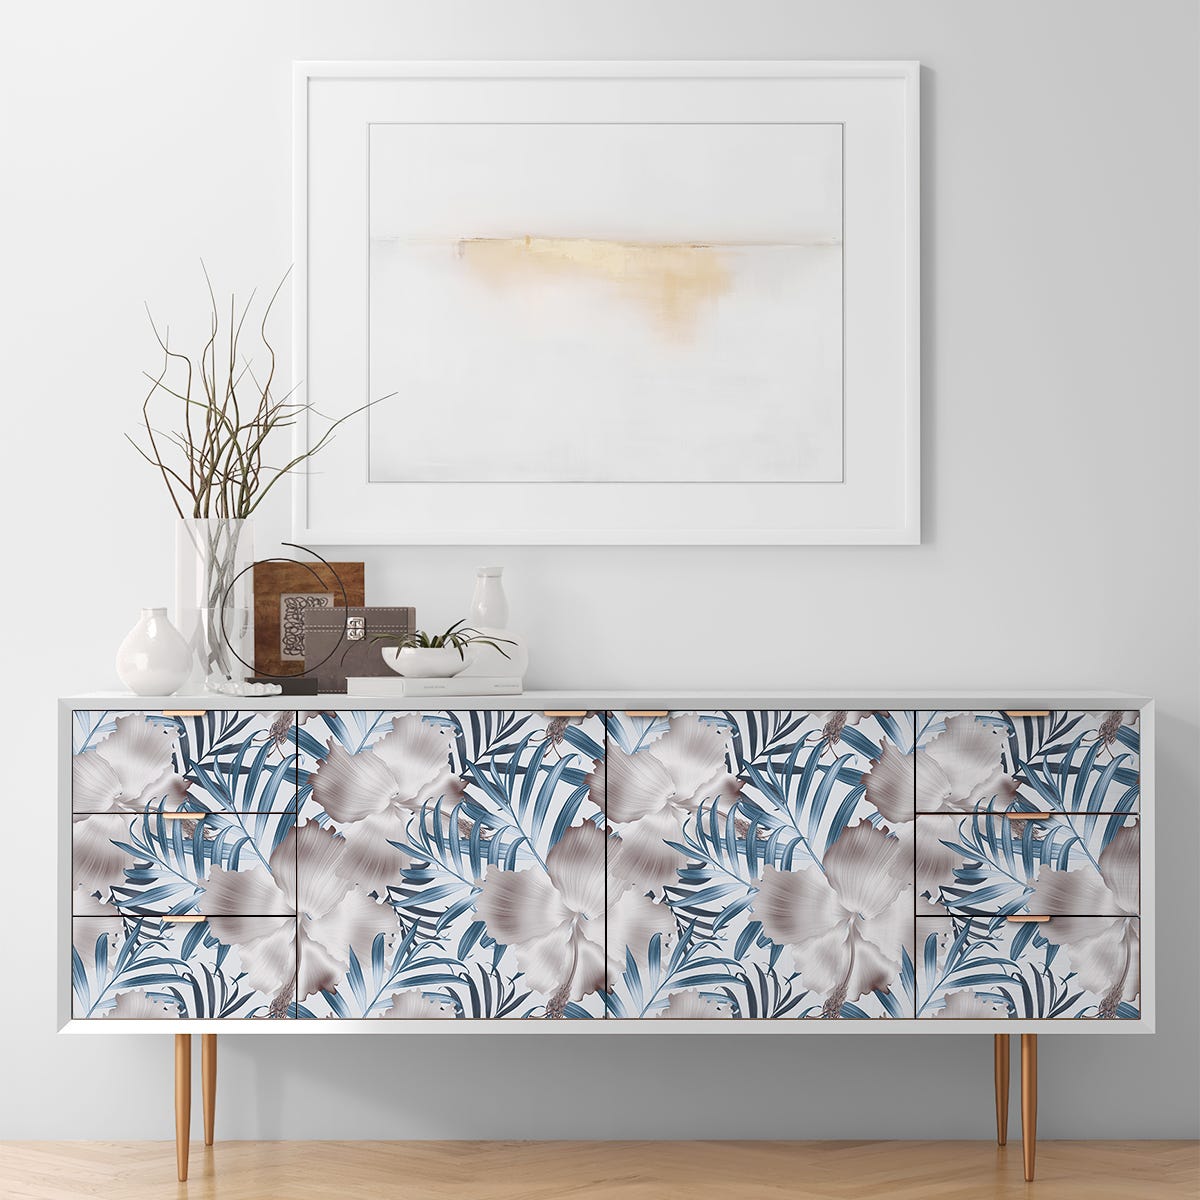 Vinilo para muebles tropicales cucuta - adhesivo de pared - revestimiento  sticker mural decorativo - 60x90cm